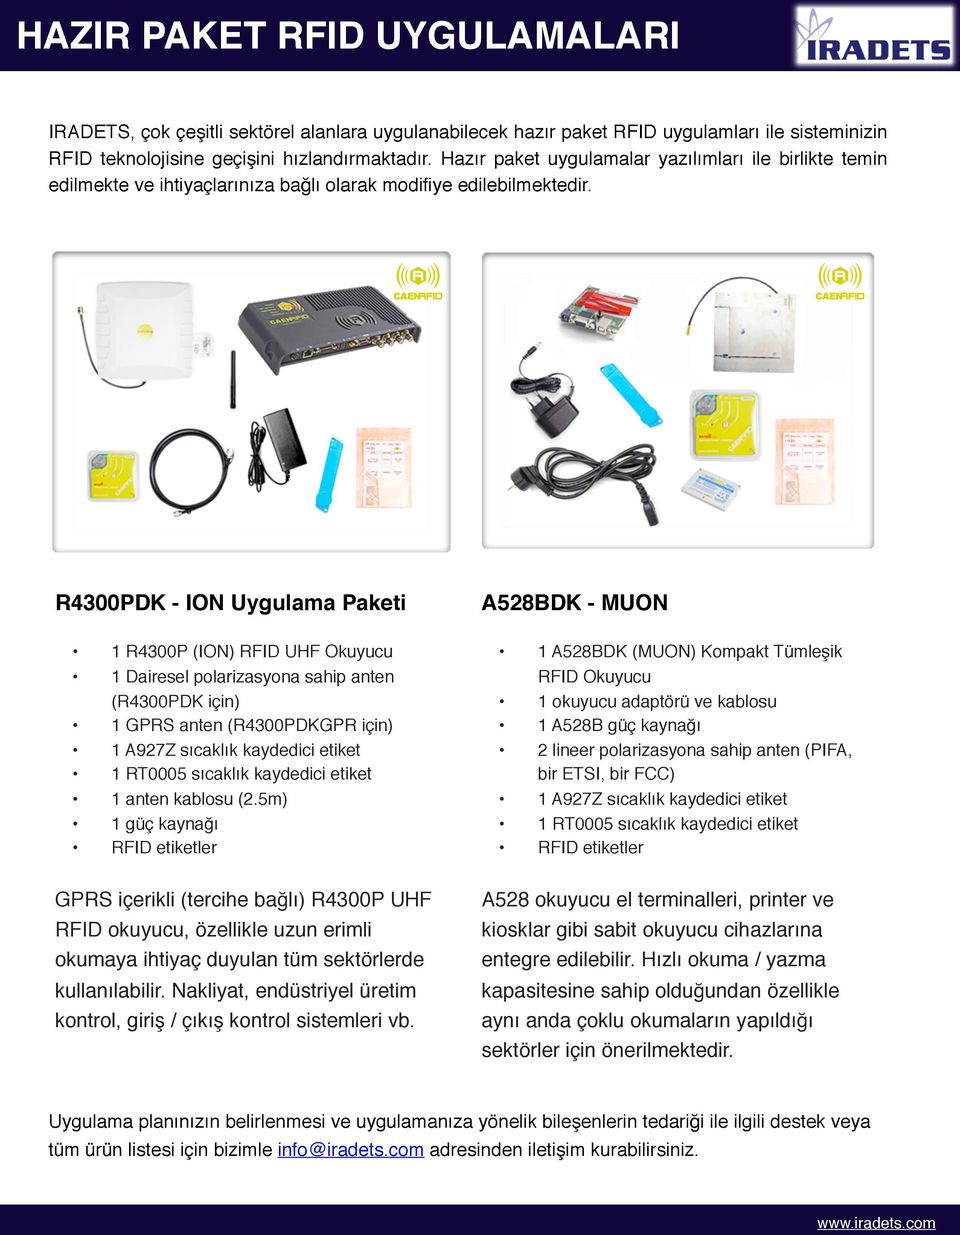 R4300PDK - ION Uygulama Paketi 1 R4300P (ION) RFID UHF Okuyucu 1 Dairesel polarizasyona sahip anten (R4300PDK için) 1 GPRS anten (R4300PDKGPR için) 1 A927Z sıcaklık kaydedici etiket 1 RT0005 sıcaklık